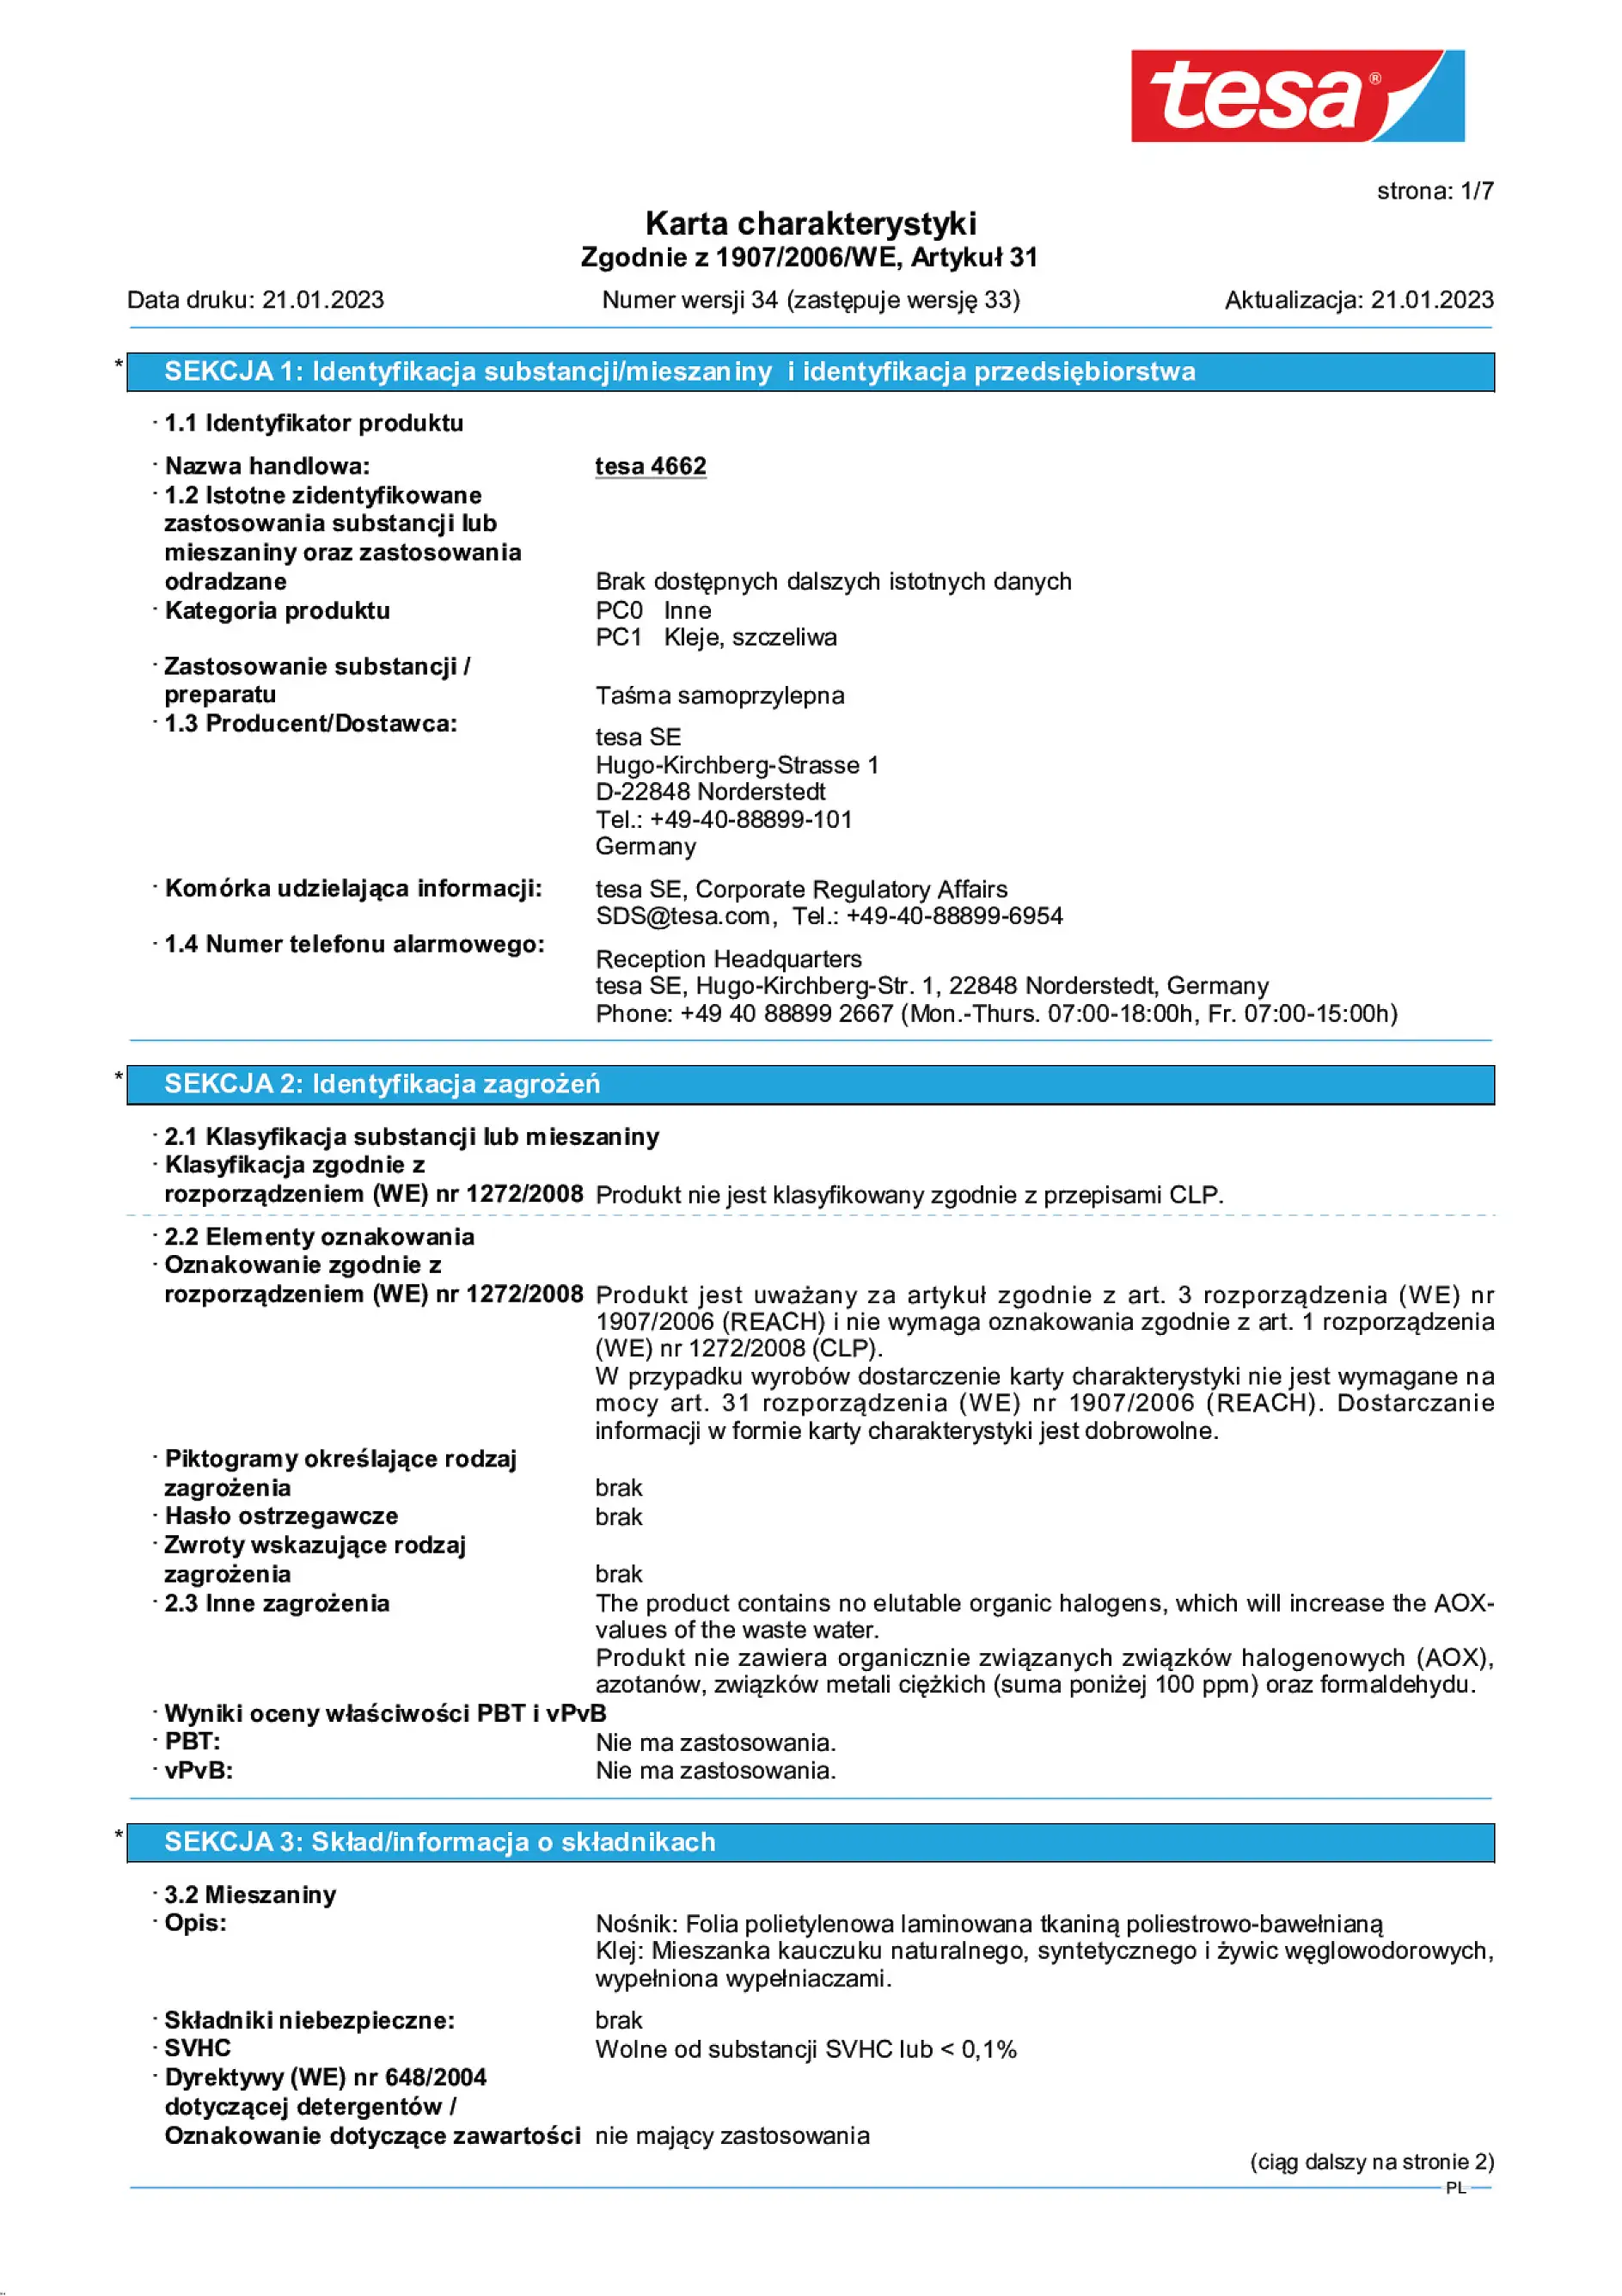 Safety data sheet_tesa® 04662_pl-PL_v34